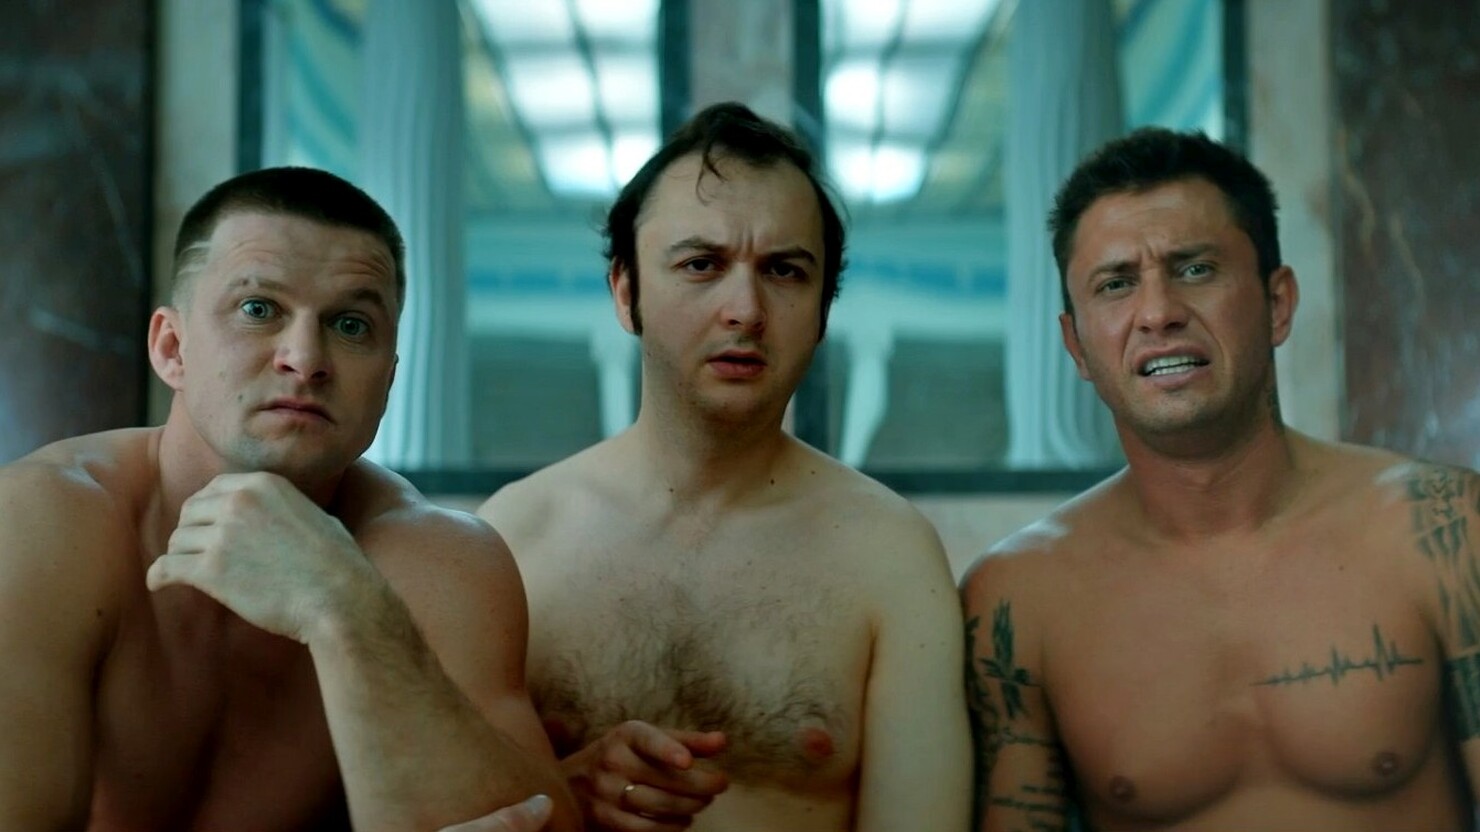 Прилучный и Курцын консультируют несчастных мужиков в трейлере комедии "Любовники"